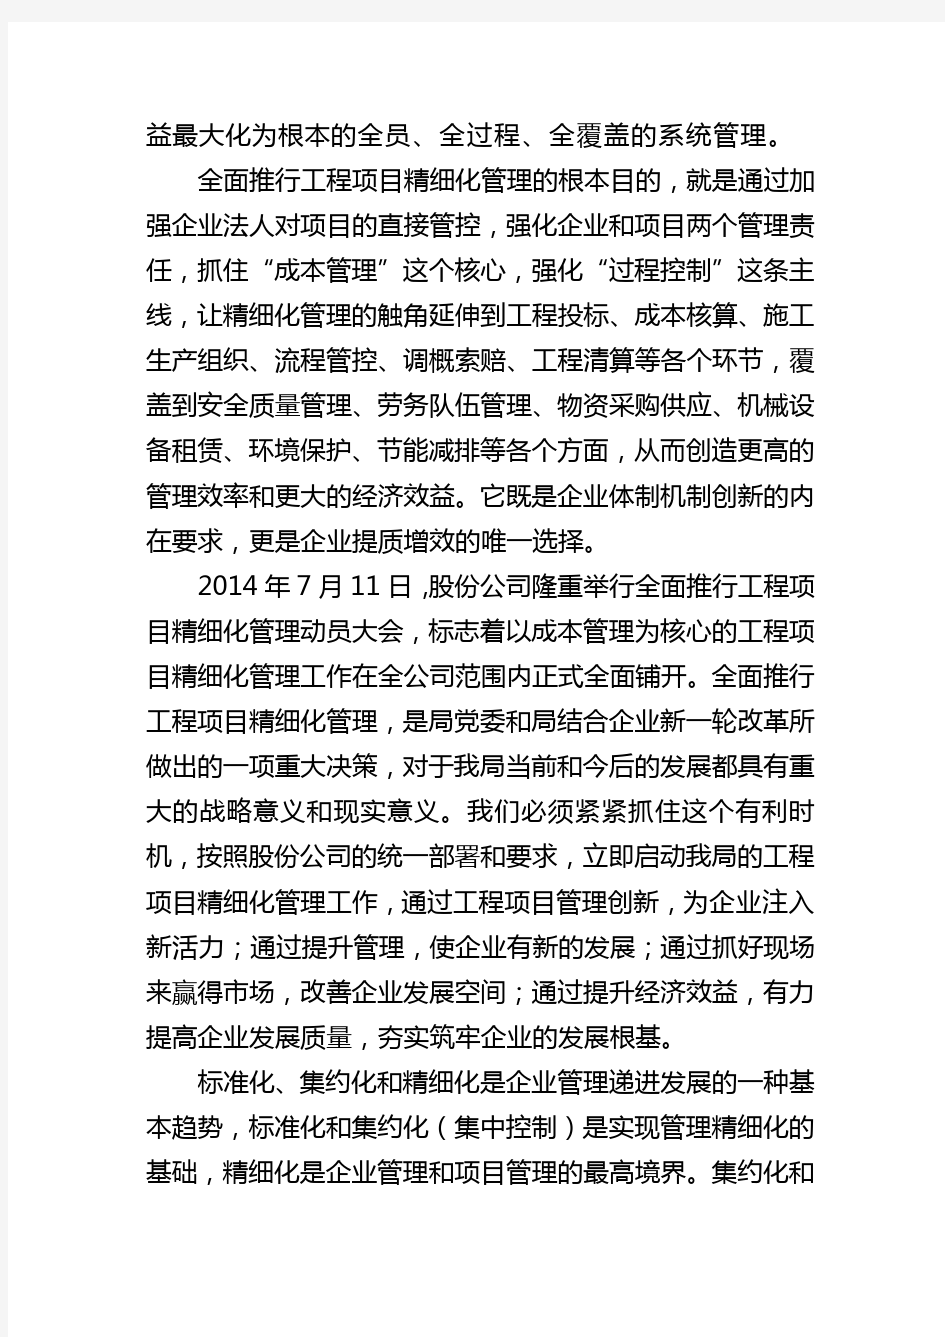 中铁五局工程项目精细化管理手册(试行)